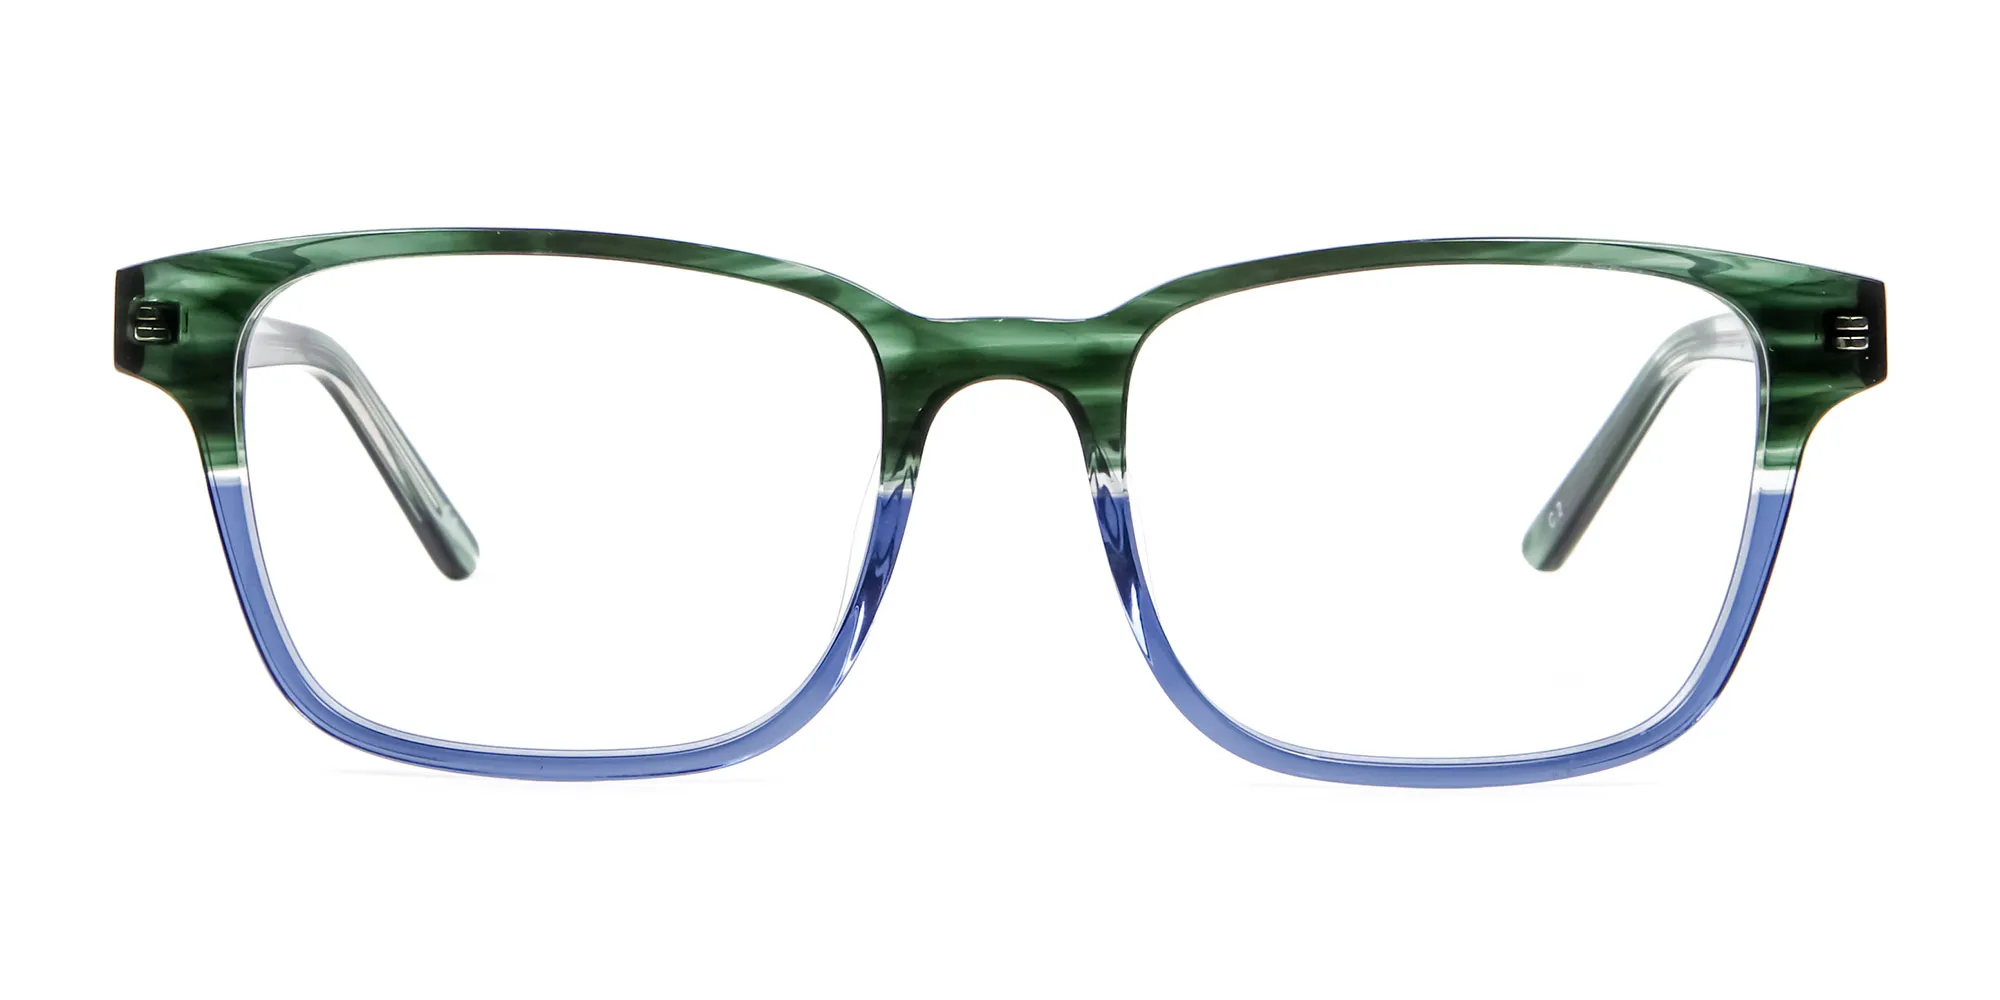 Green & Blue Rectangular Glasses - 1